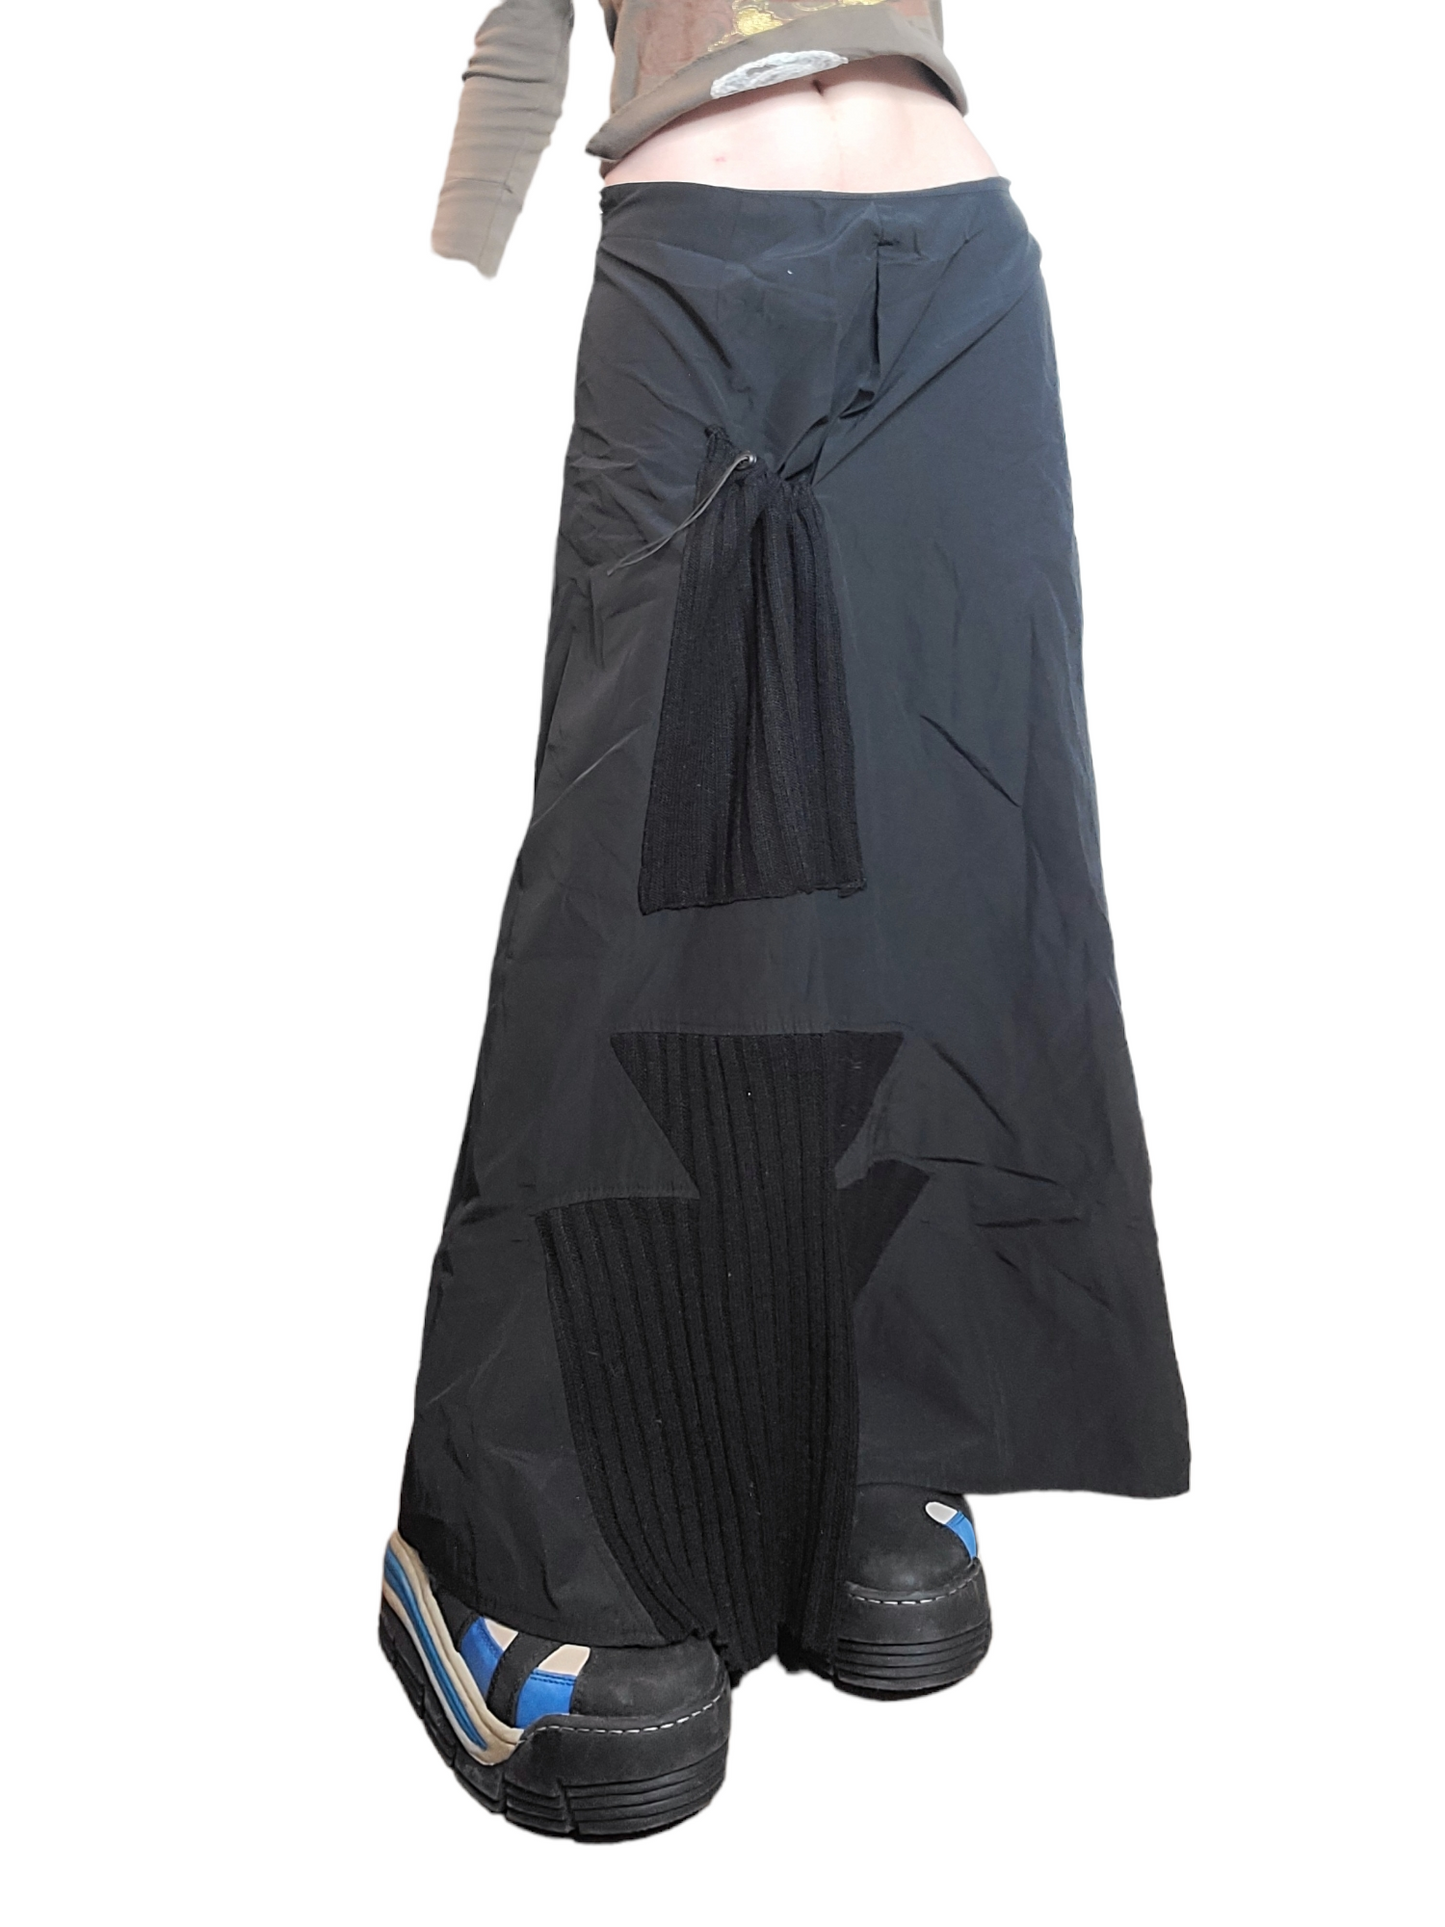 Maxi skirt parachute gorpcore subversive basics